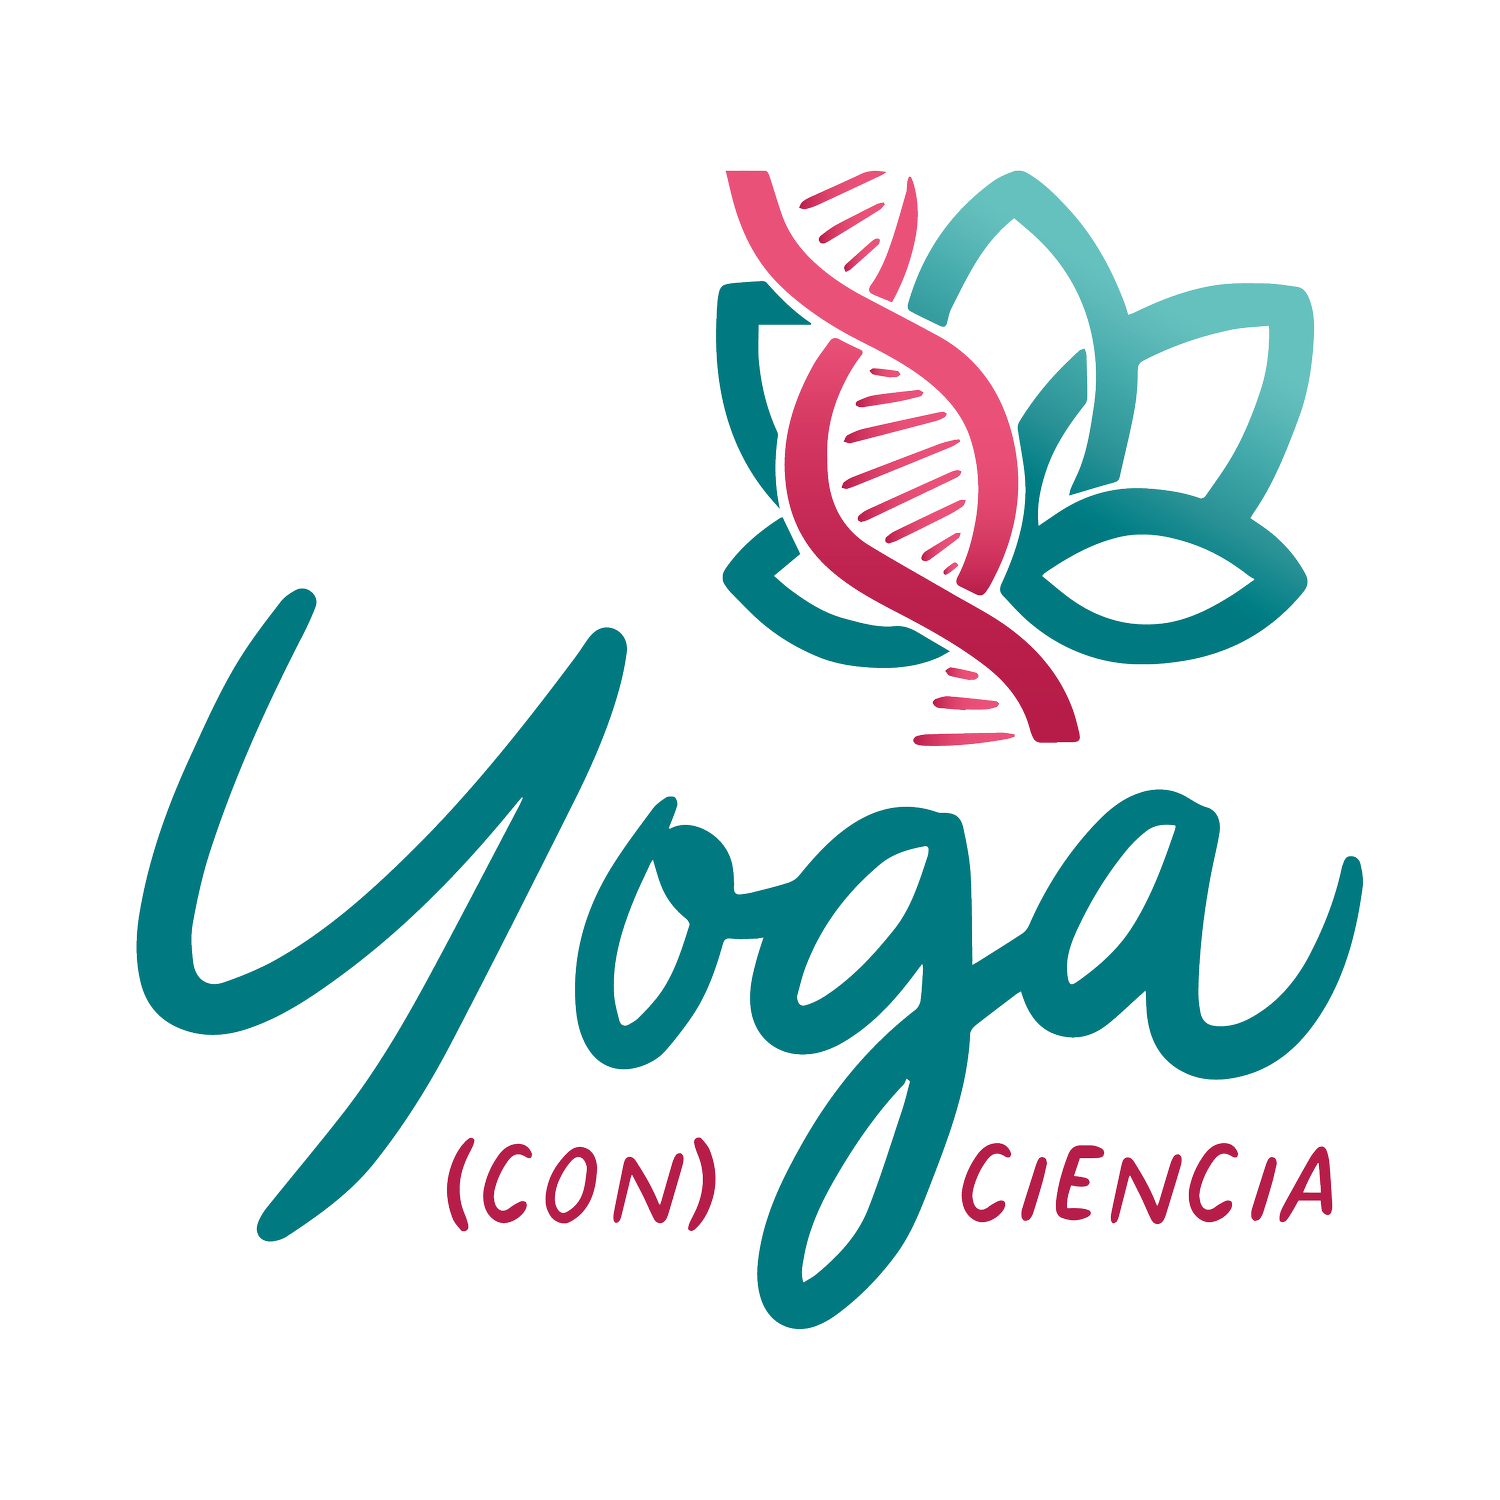 Yoga (con) ciencia